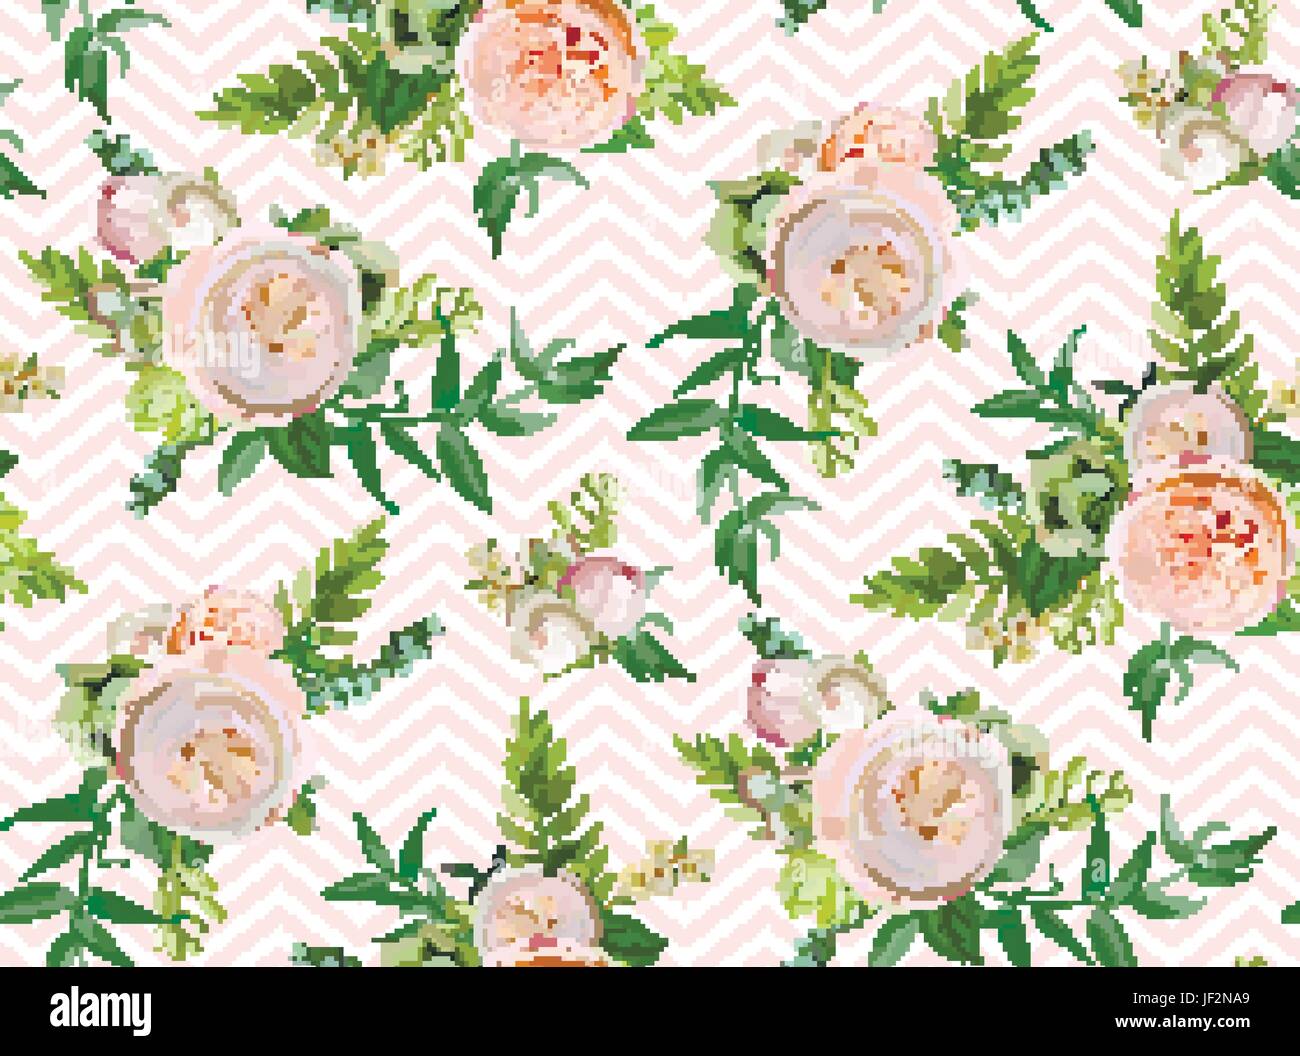 Vektor floral Sommer Musterdesign: Blumensträuße von rosa weißen Garten stieg saftig grüner Kaktus Blumen Saisonpflanzen grün elegante Aquarell Stock Vektor